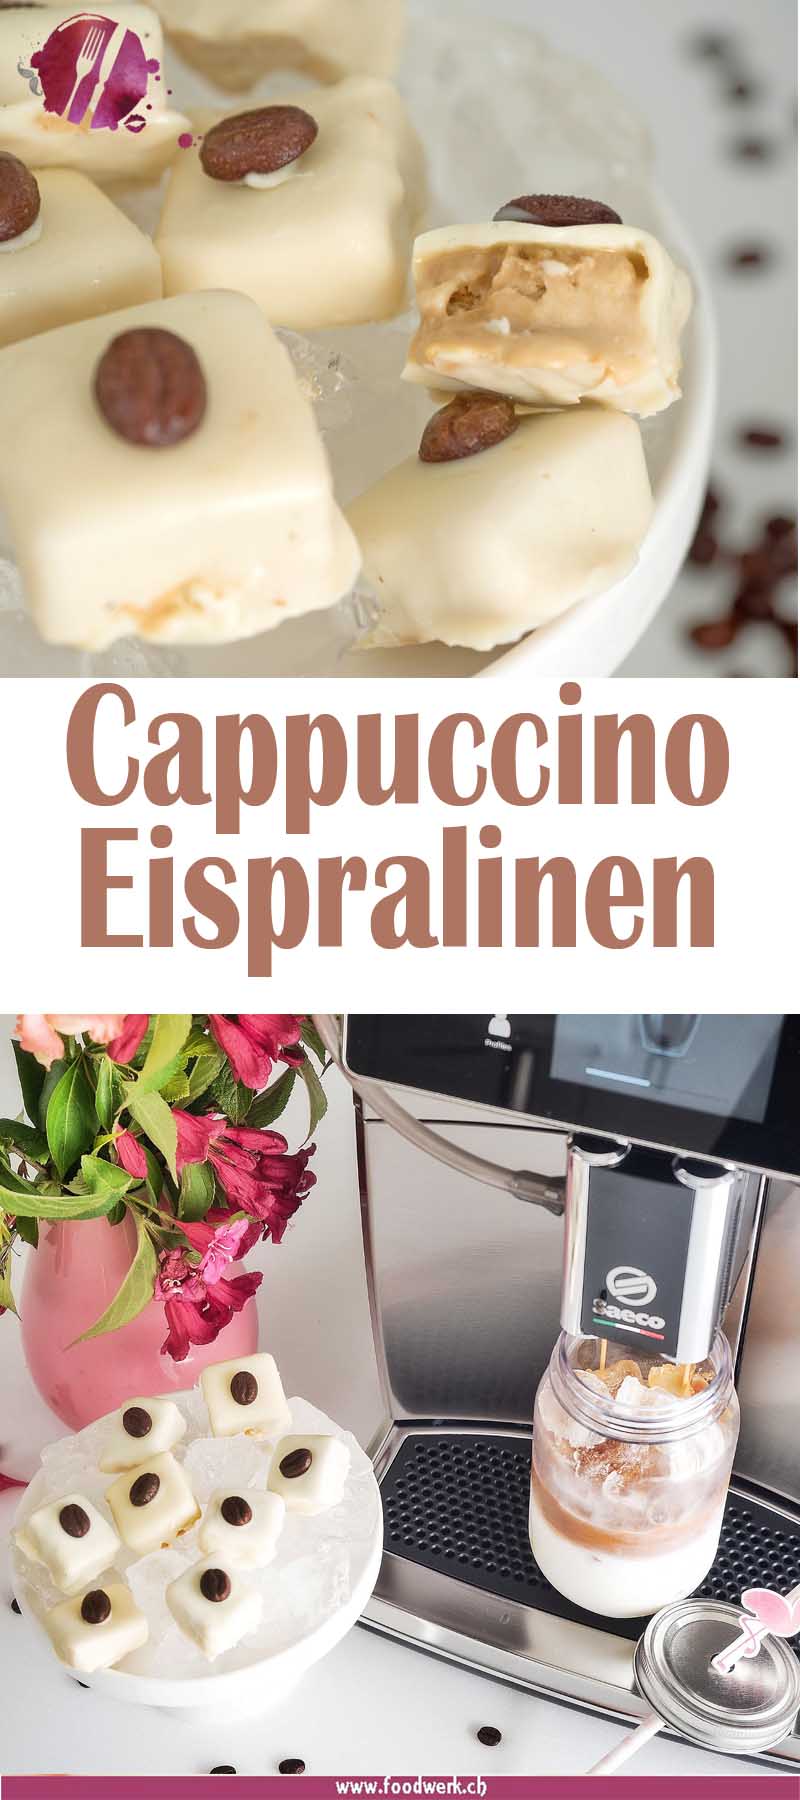 xelsis, saeco, cappuccino Eispralinen, Kaffeemaschine